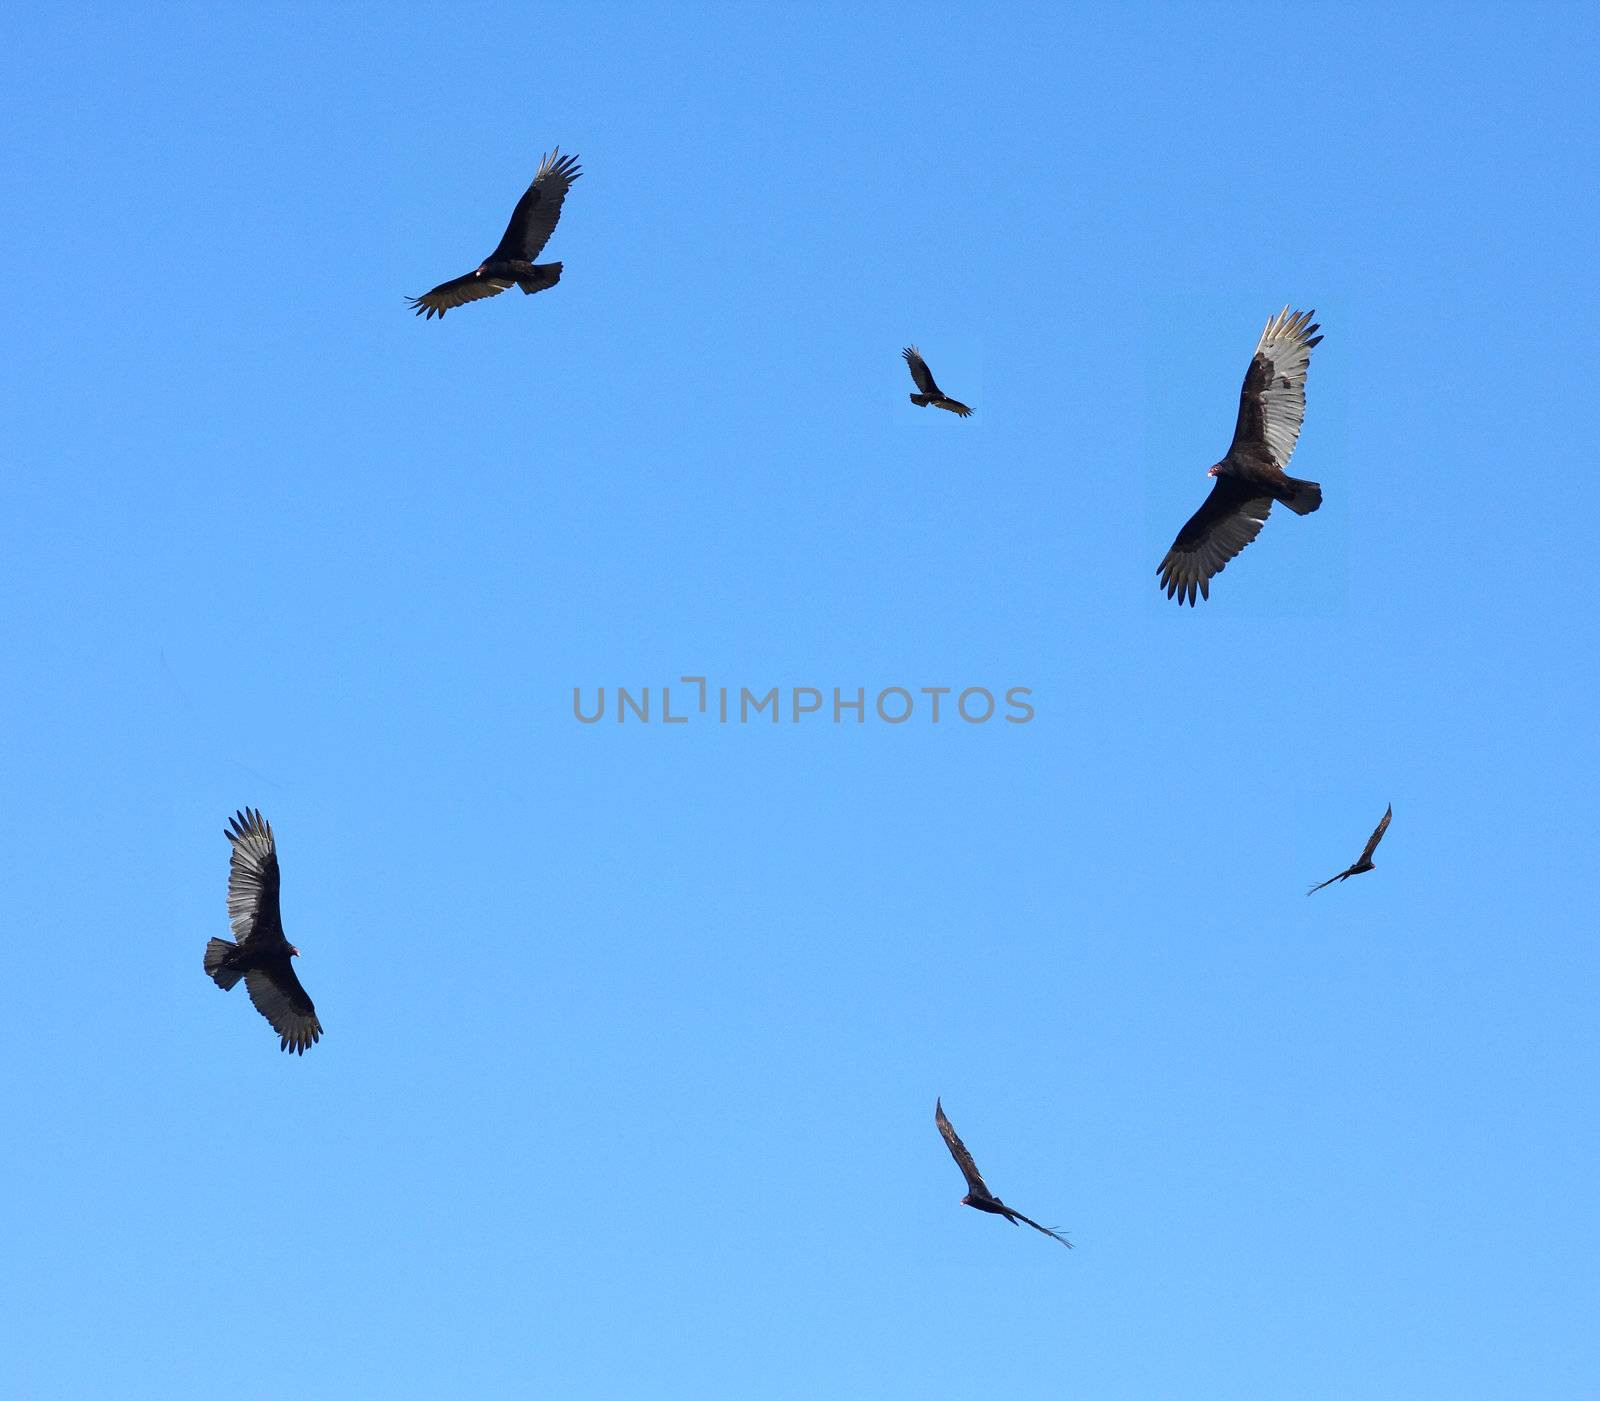 Turkey buzzards in flight in blue sky.